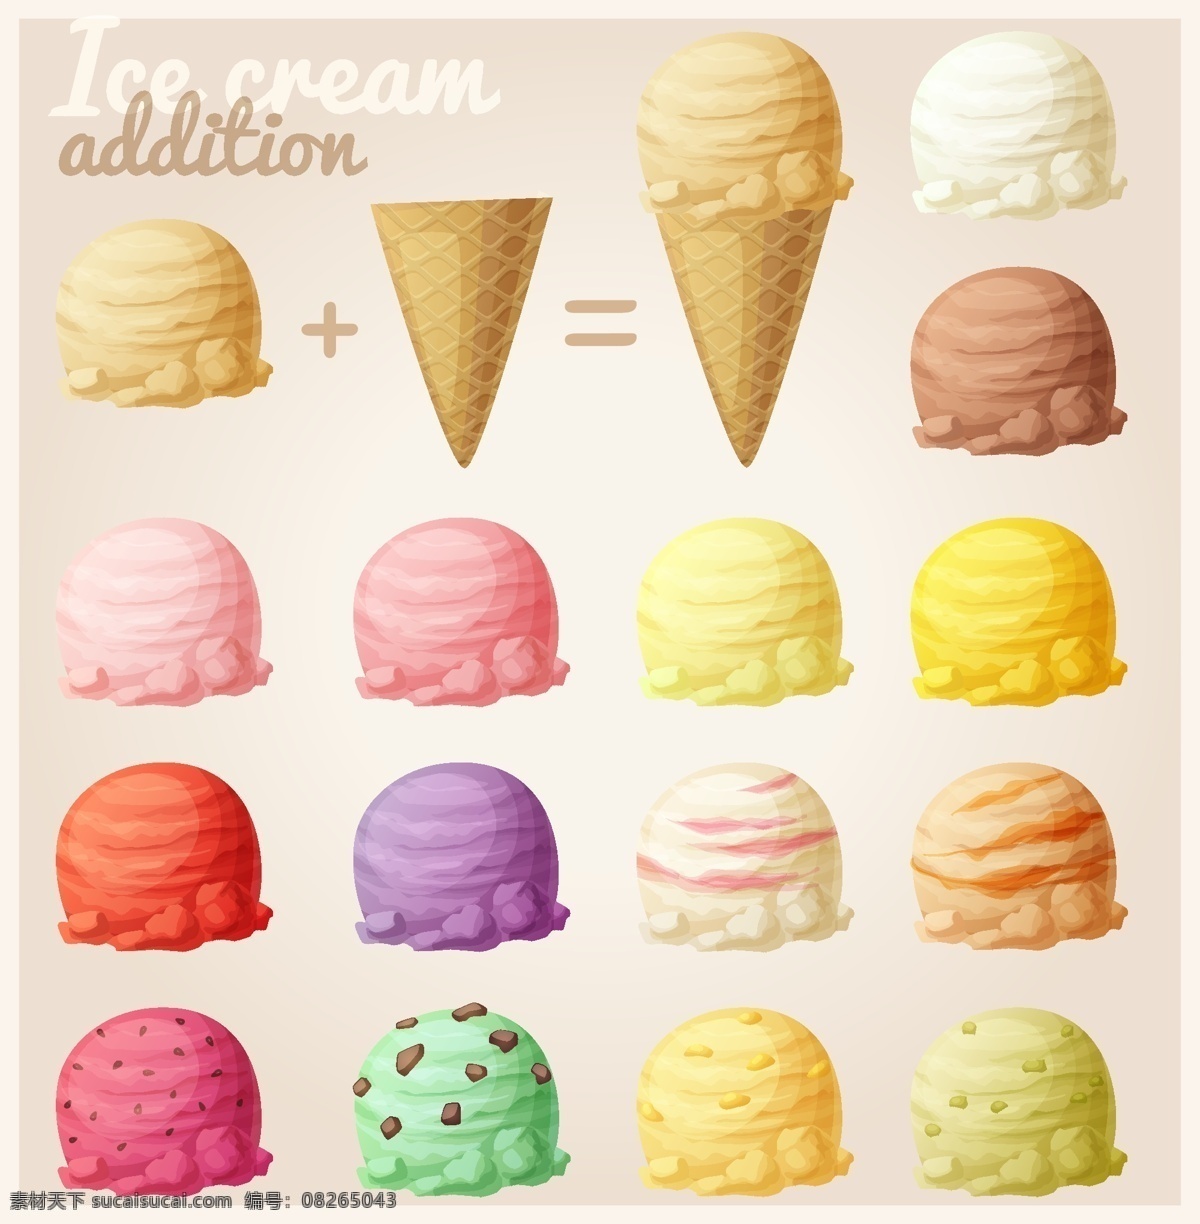 冰激凌 蛋筒冰激凌 甜筒 草莓 冰淇淋 哈根达斯 冷饮 美味 甜品 西餐美食 餐饮美食